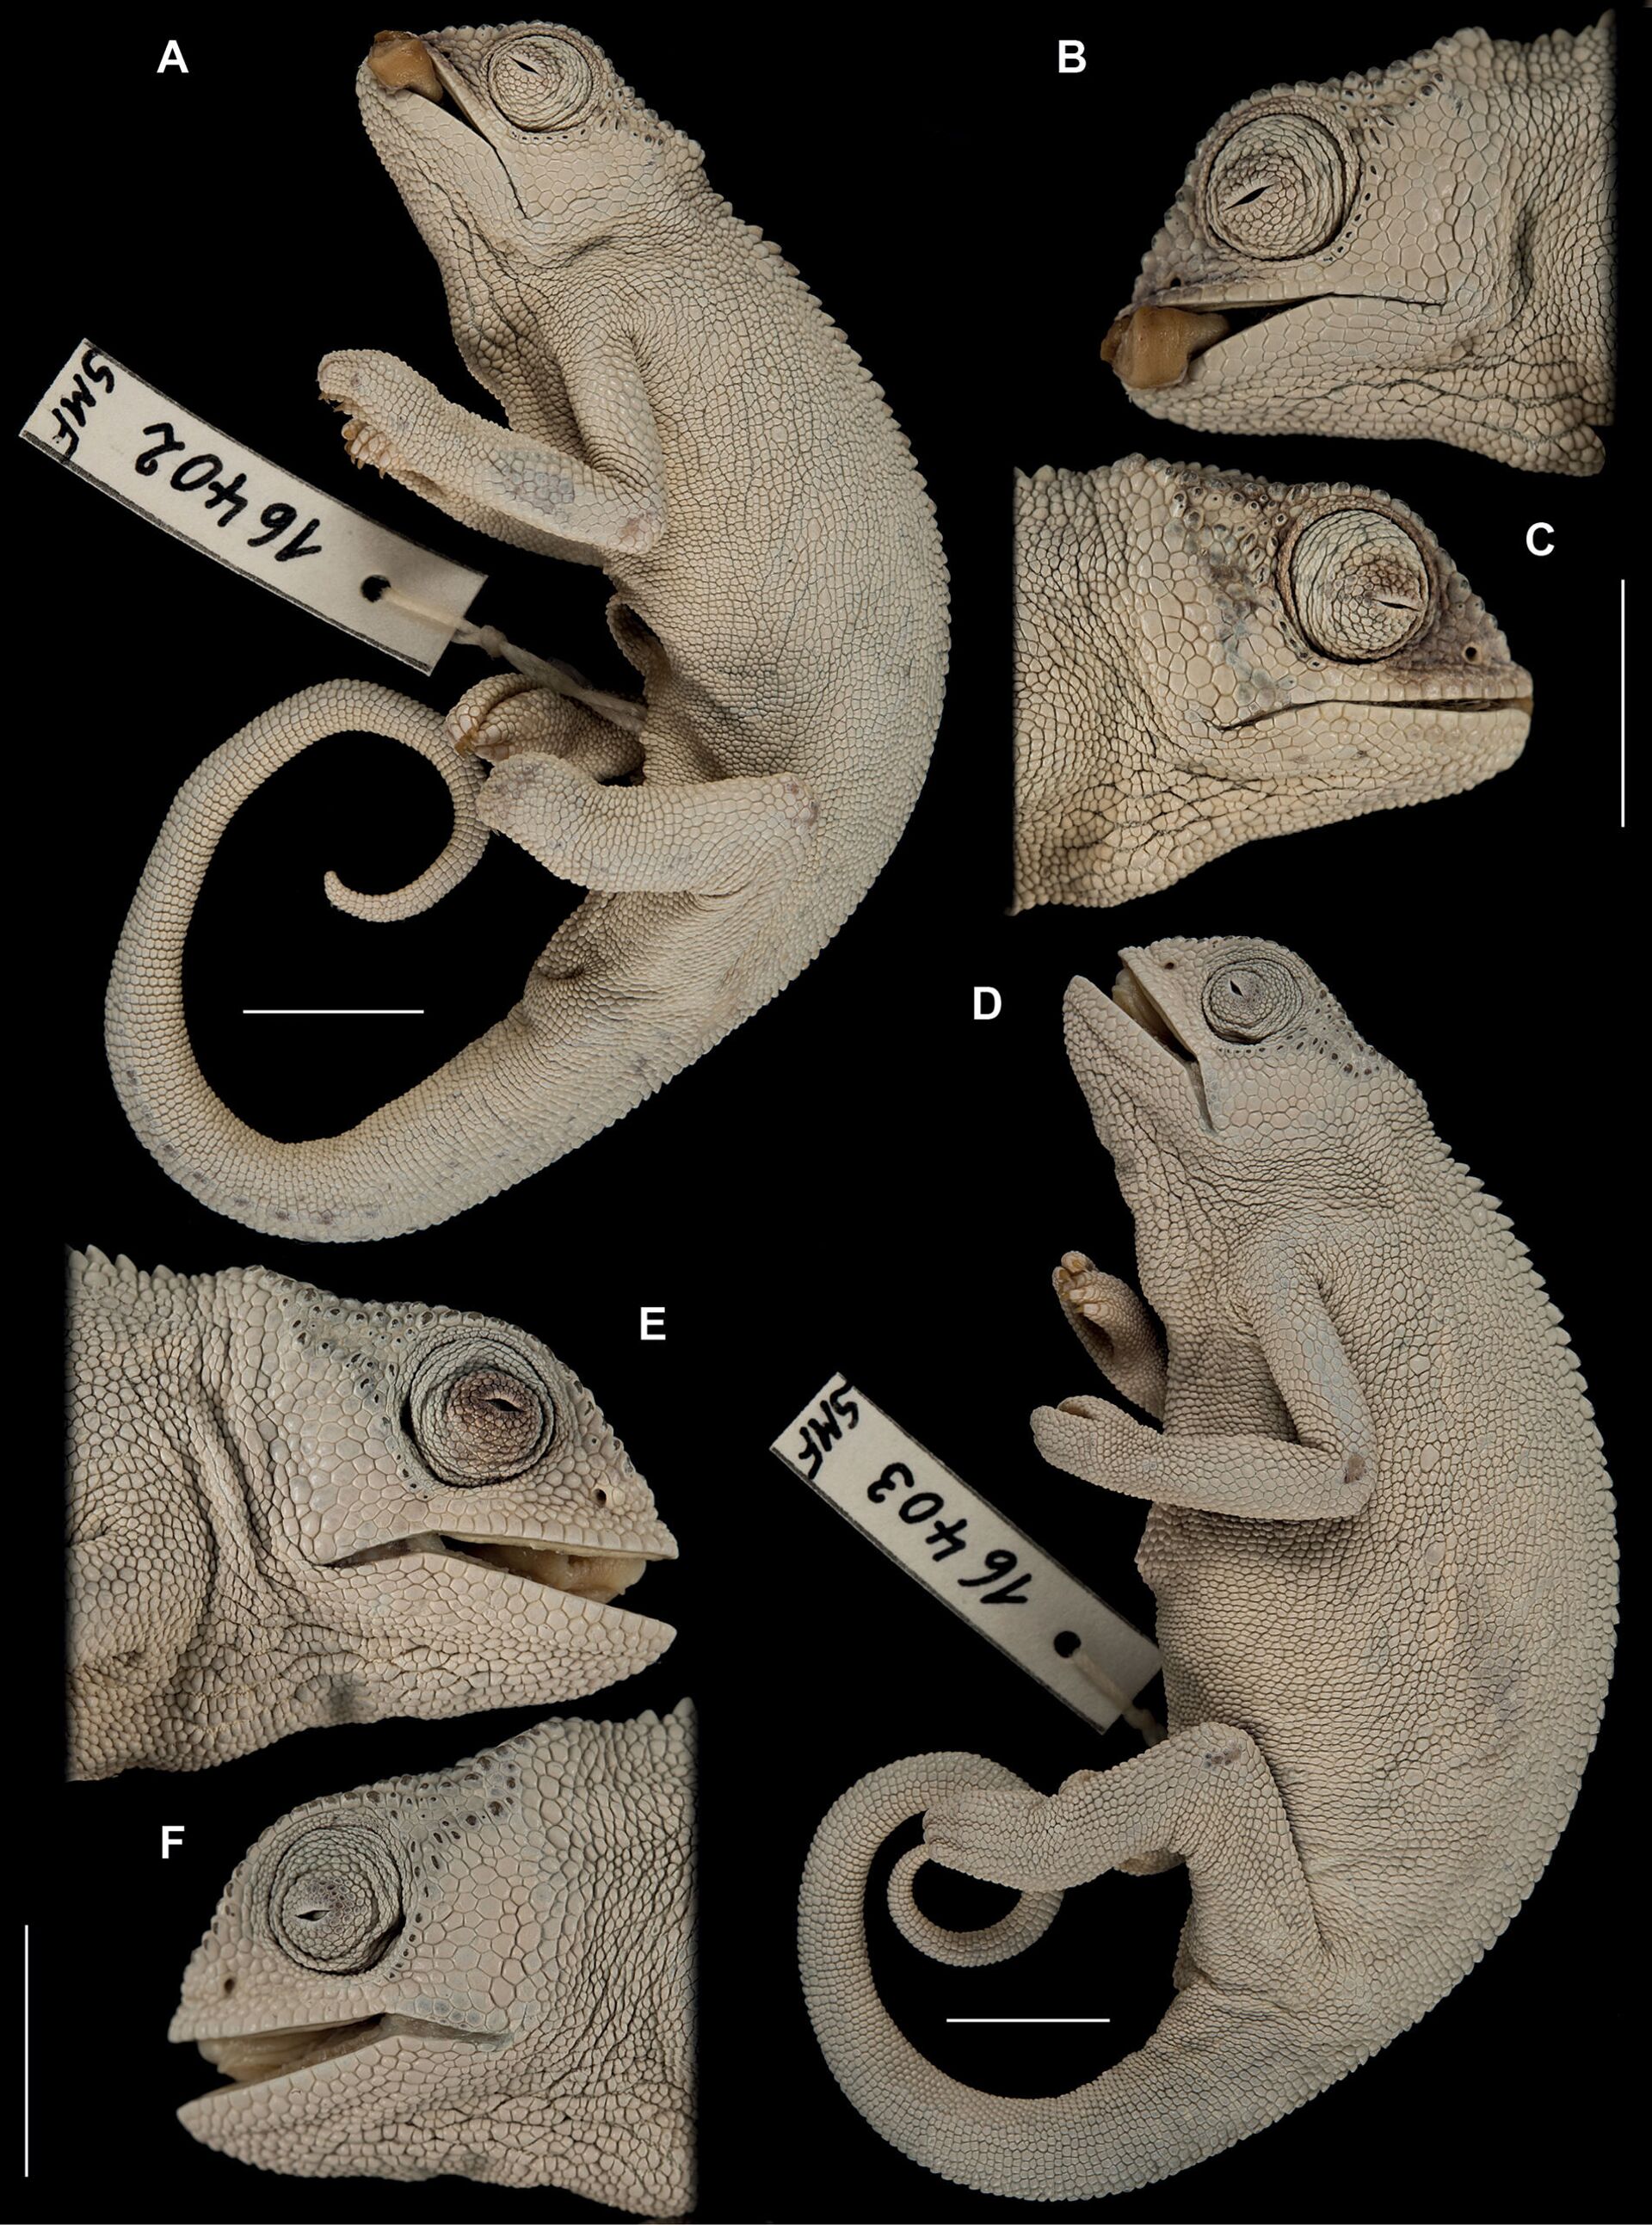 Descoberta nova espécie de camaleão endêmica das montanhas centrais da Etiópia (FOTOS) - Sputnik Brasil, 1920, 24.03.2021